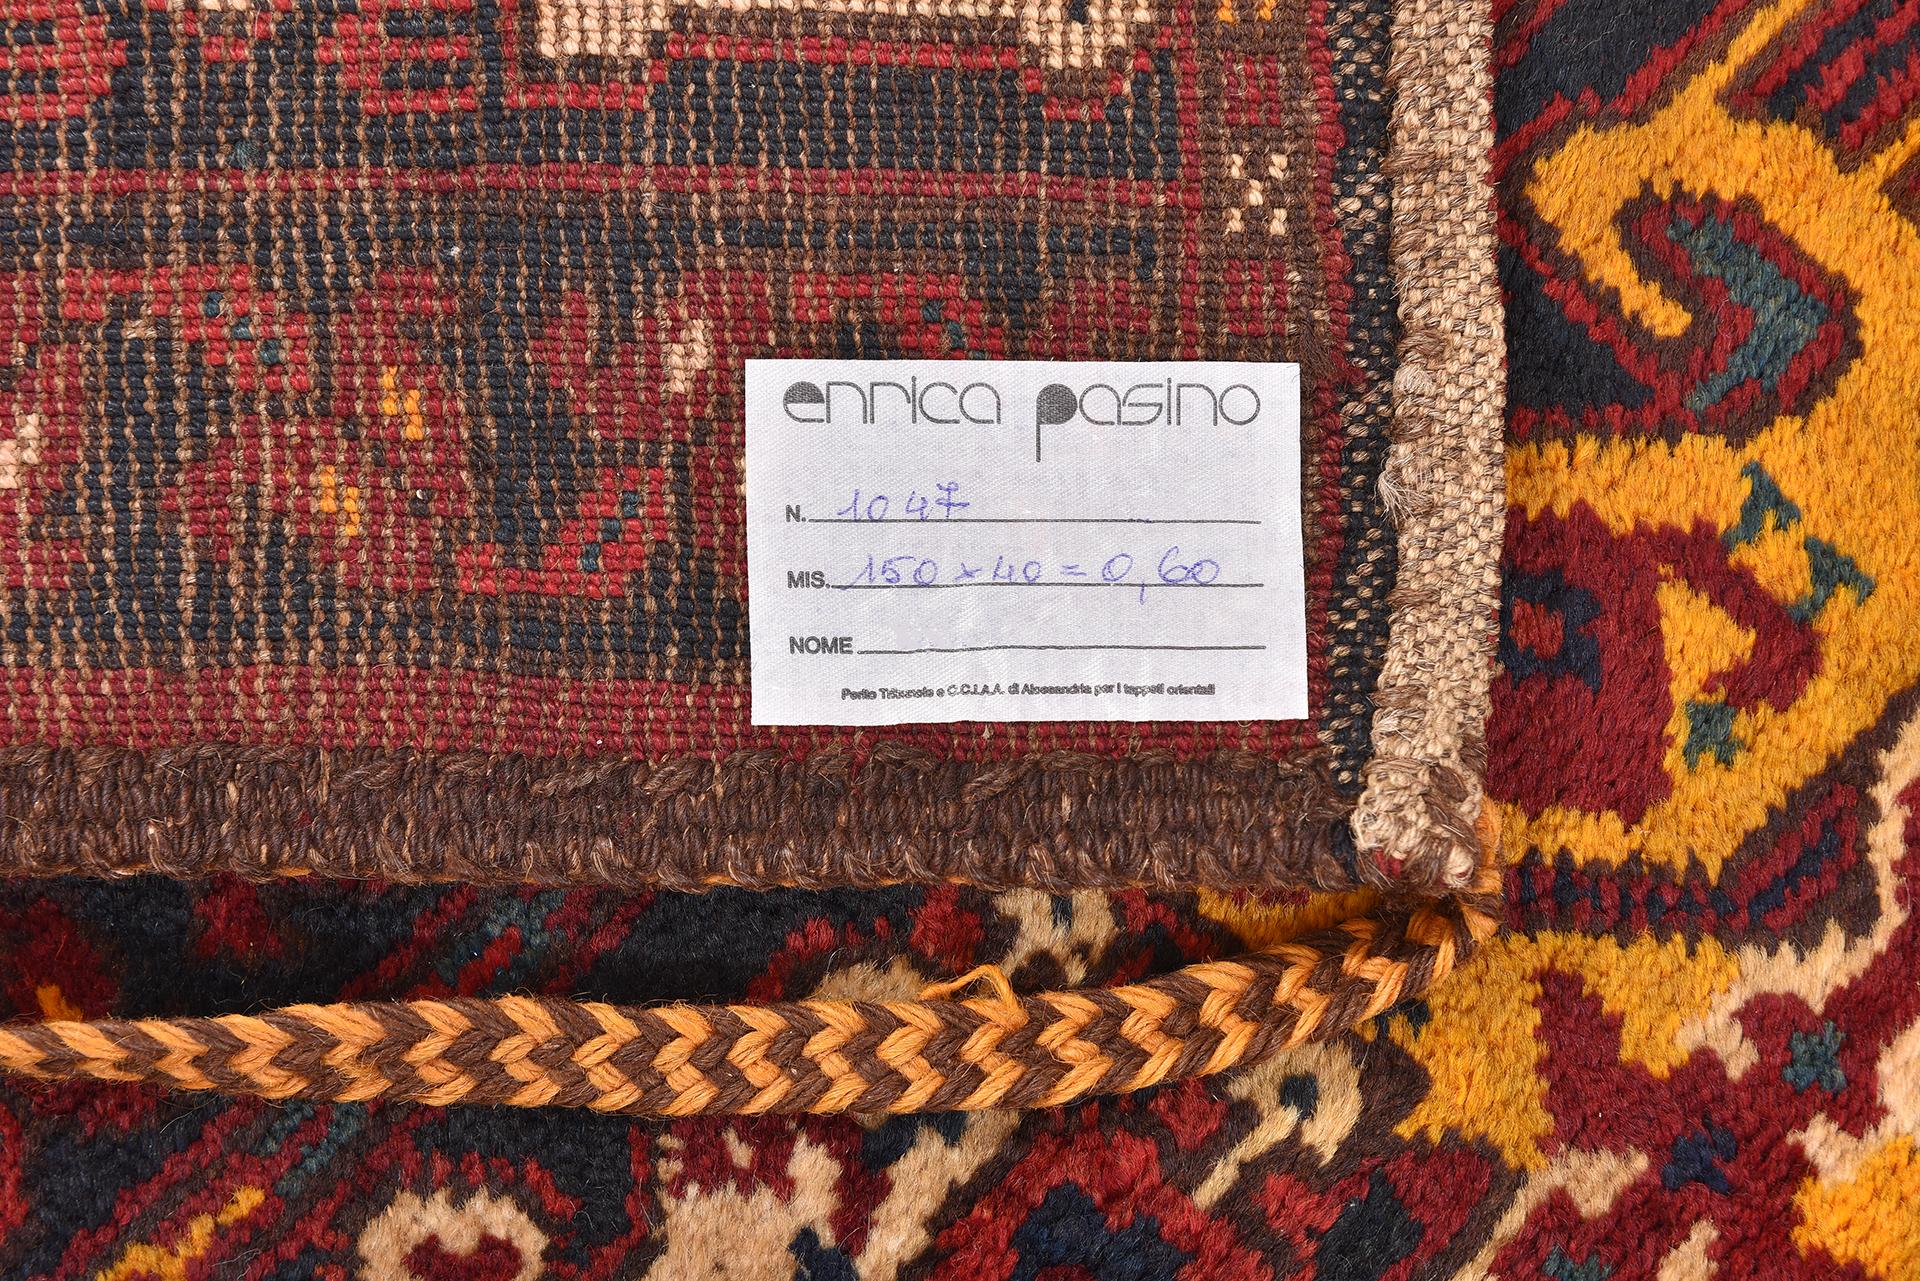 nr. 1047 - Geometrisches, ungewöhnliches Muster für diesen schönen kleinen Wandteppich, der von turkomanischen Ersari-Nomaden als Tasche hergestellt wurde.
Torbas wurden von Nomaden zur Aufbewahrung von Taschen, aber auch über der Tür des Zeltes